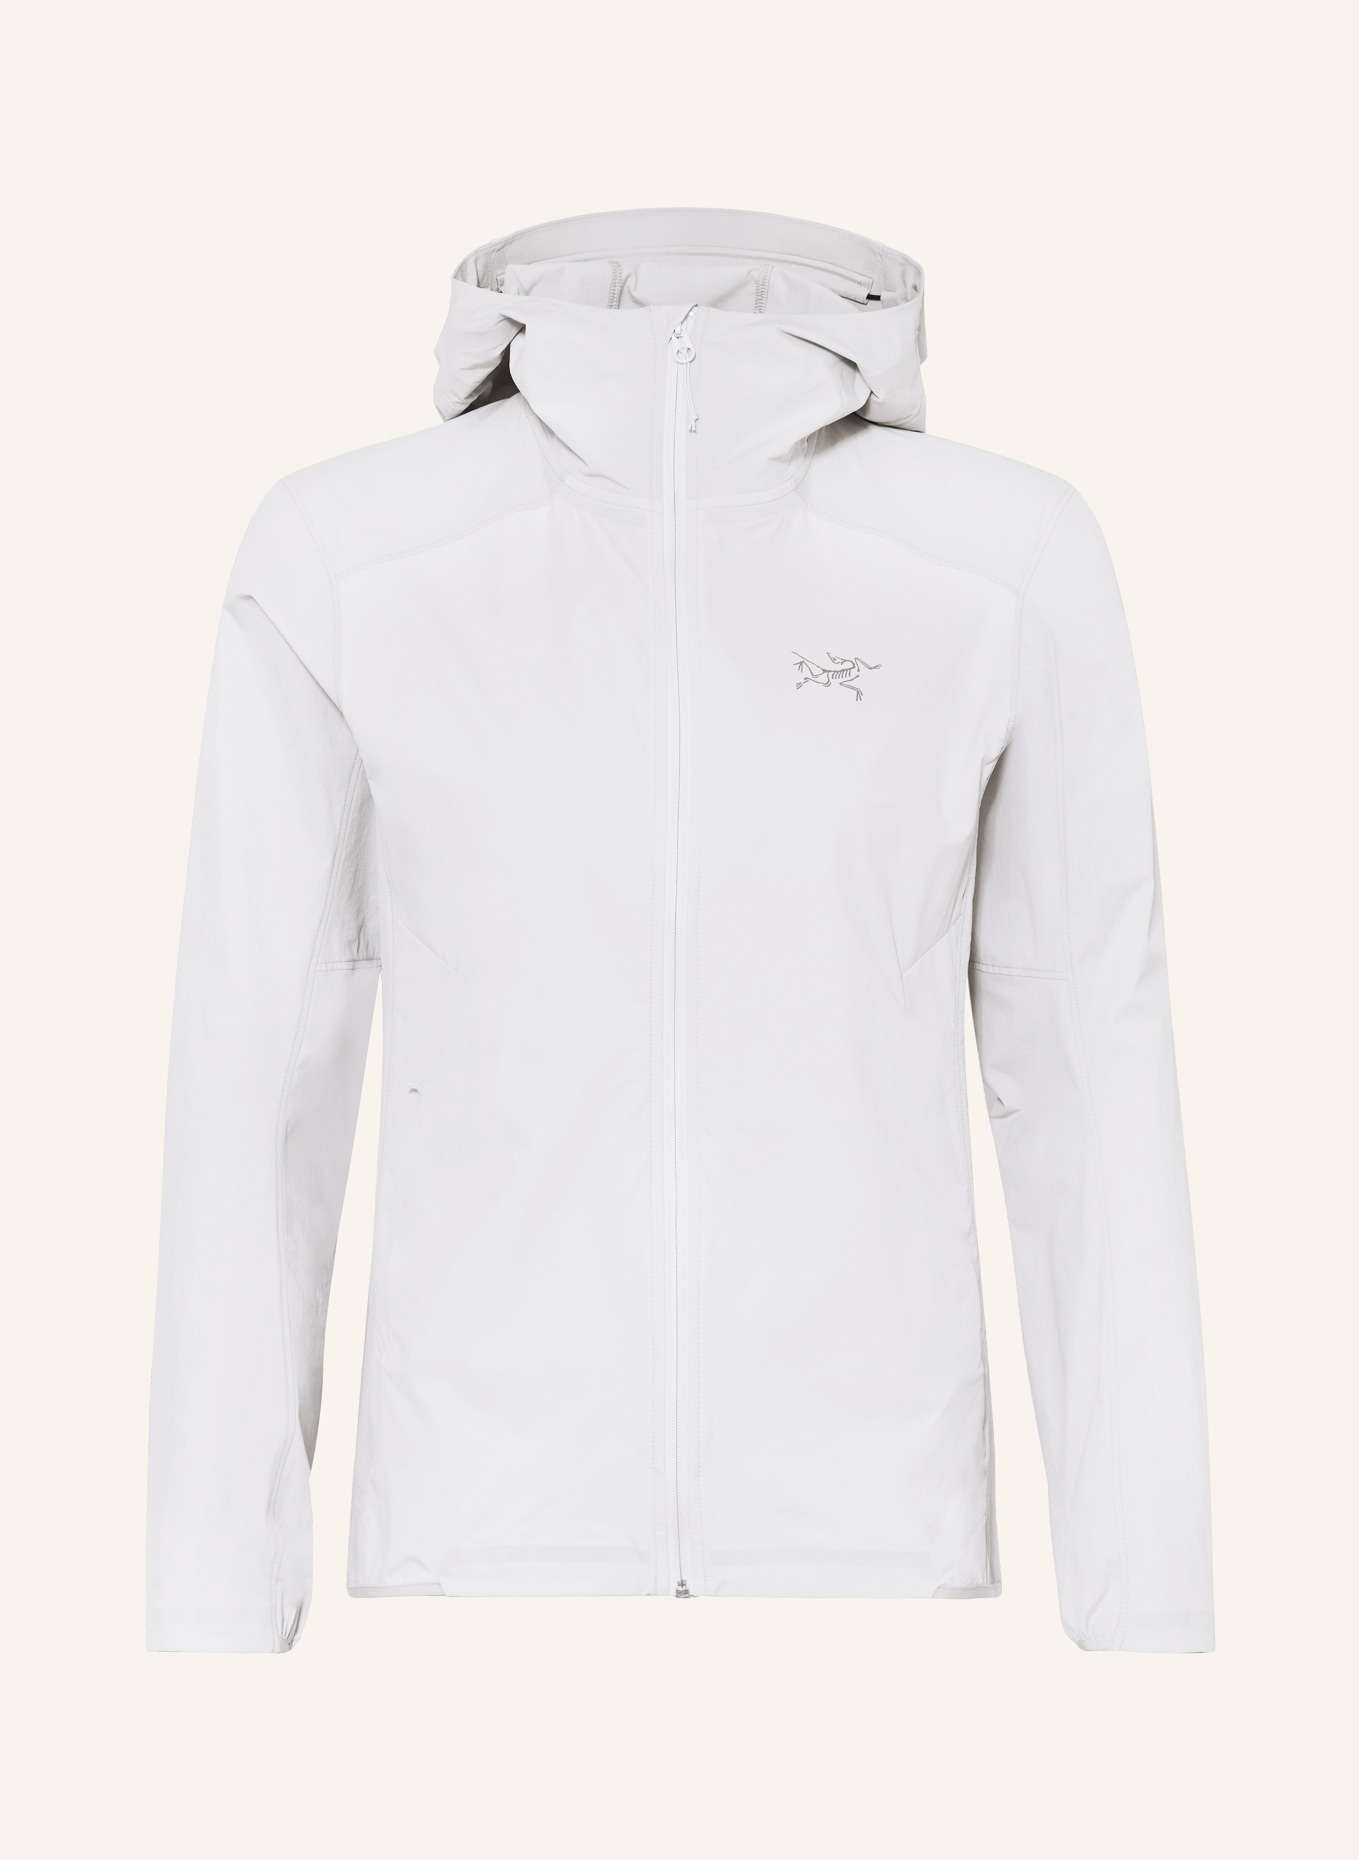 ARC'TERYX Outdoor jacket GAMMA, Color: GRAY (Image 1)